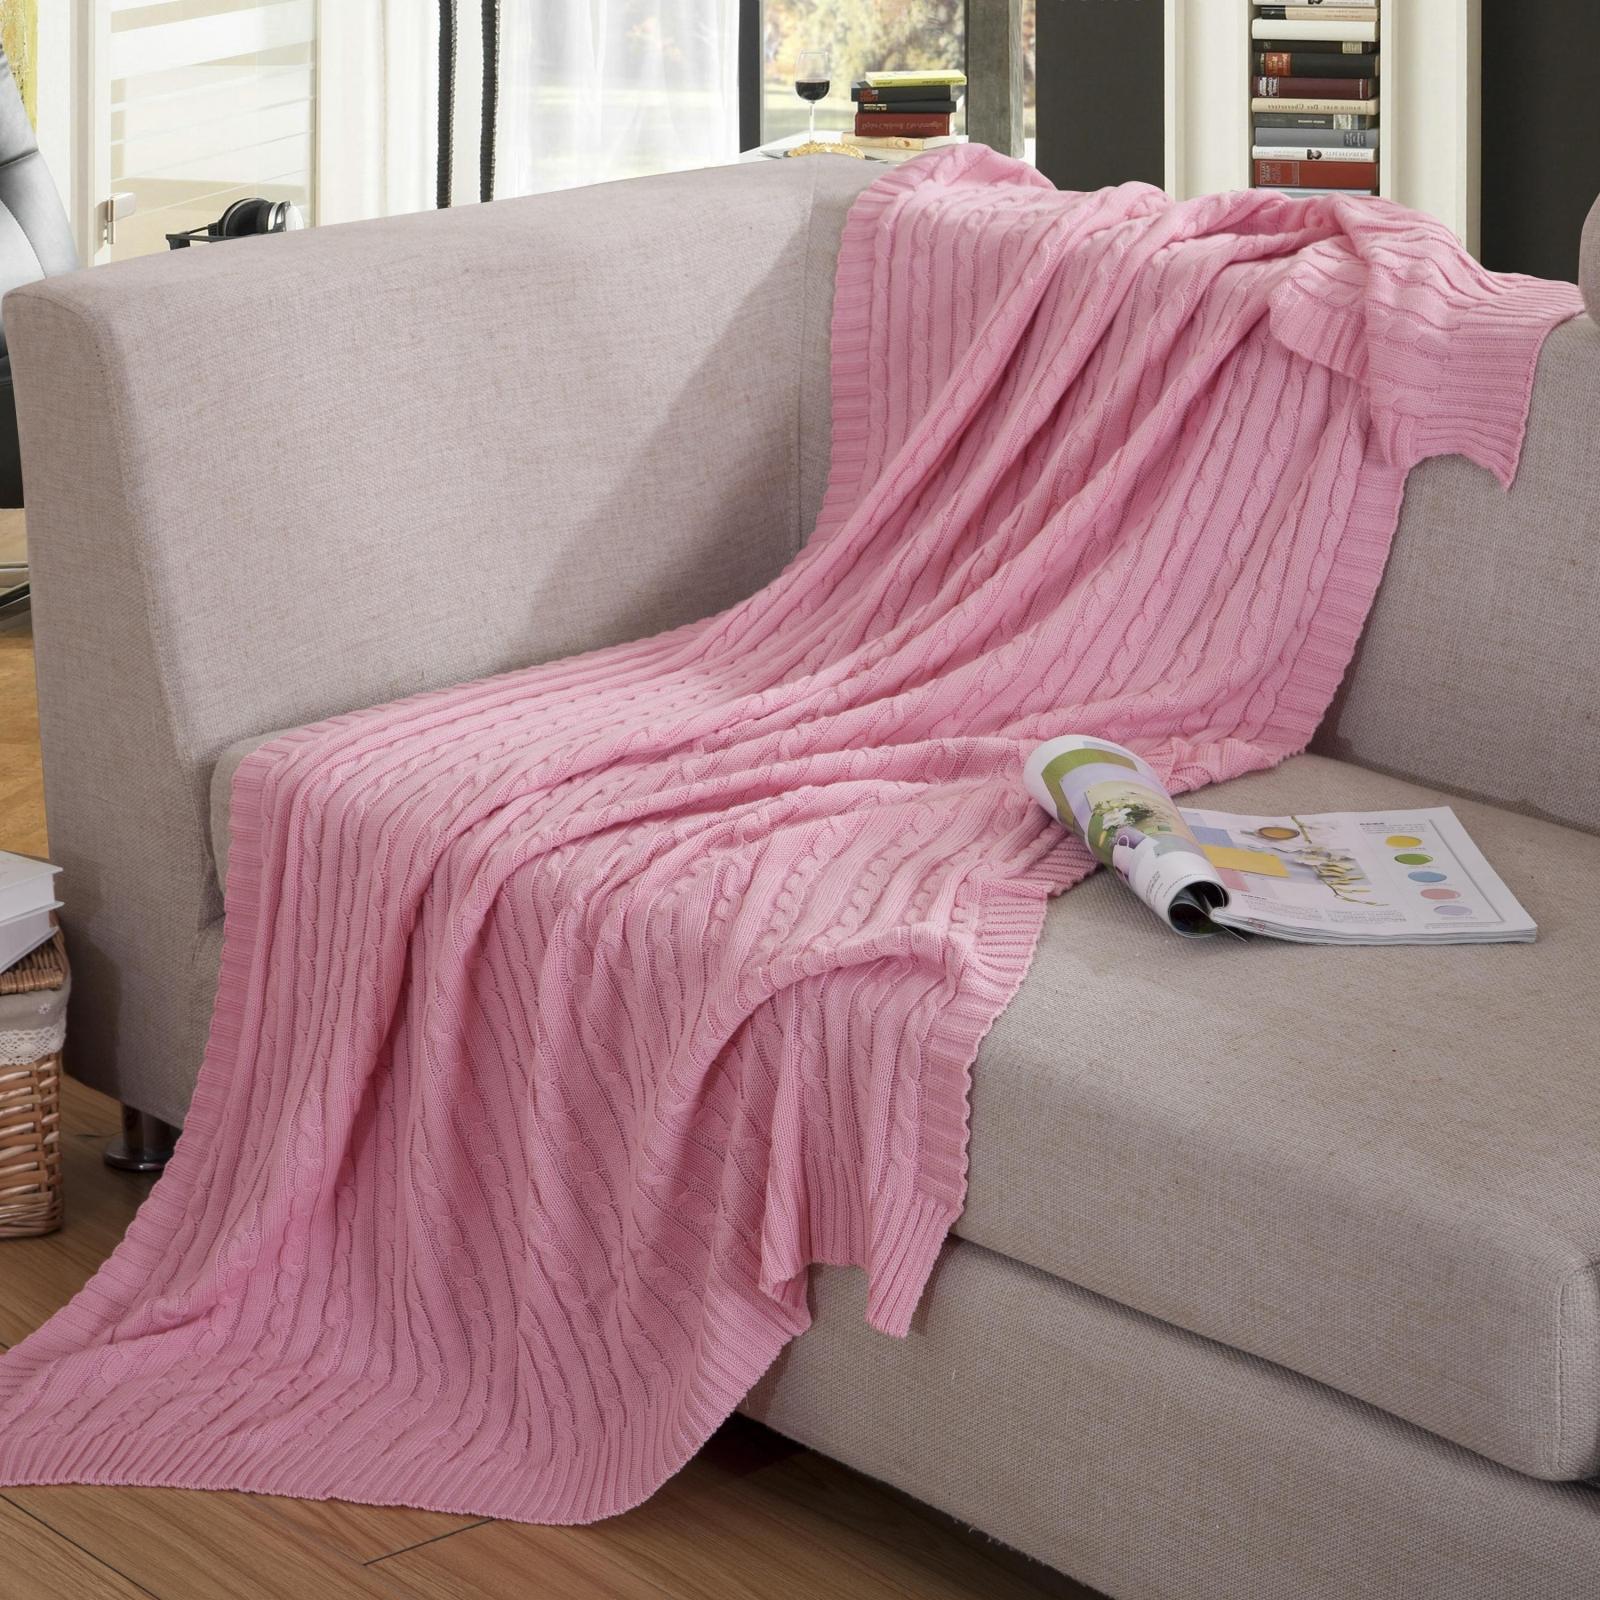 推荐 欧洲风 亲肤舒适纯棉 欧式 沙发盖 郊游 电脑 秋冬季线毯